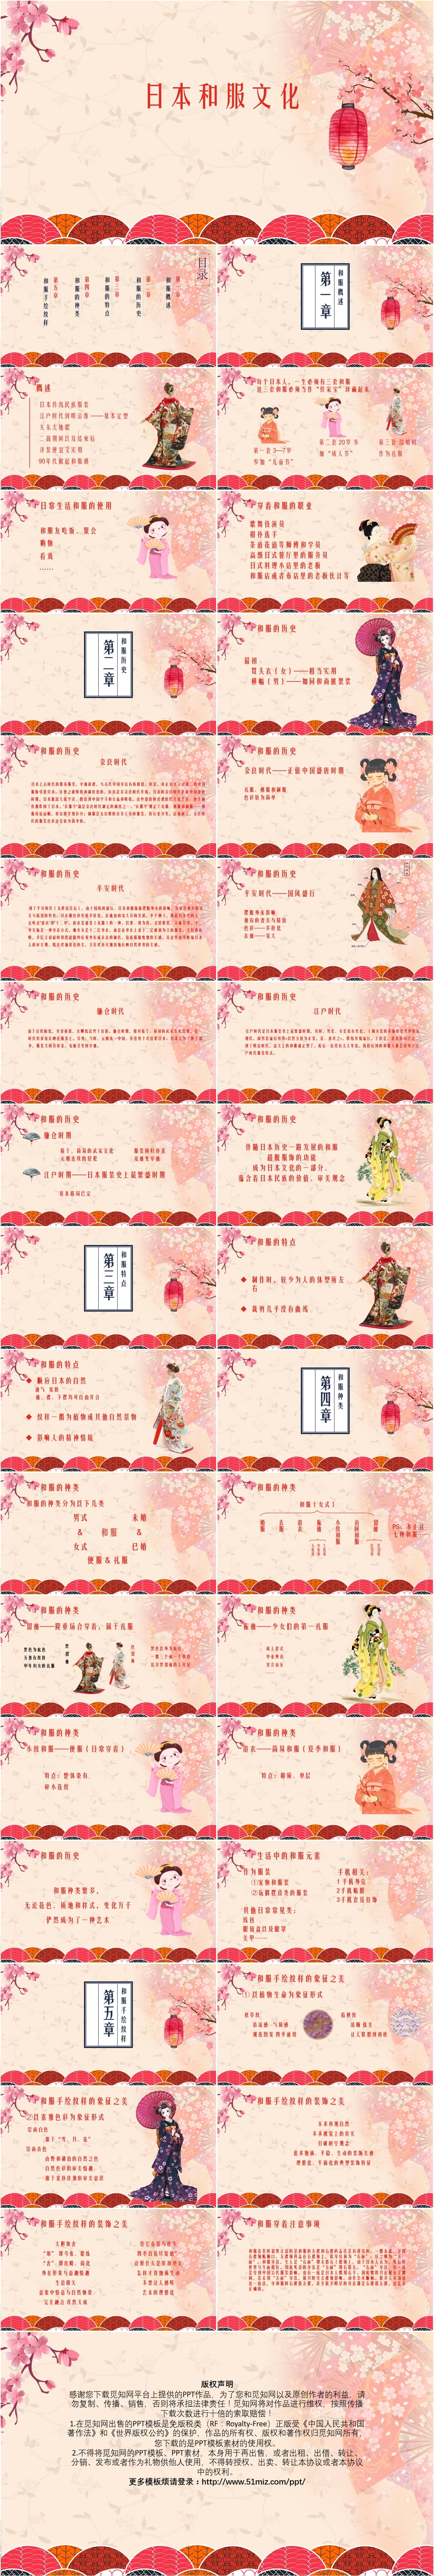 日系和风日本传统文化和服介绍宣传推广PPT模板日本旅游